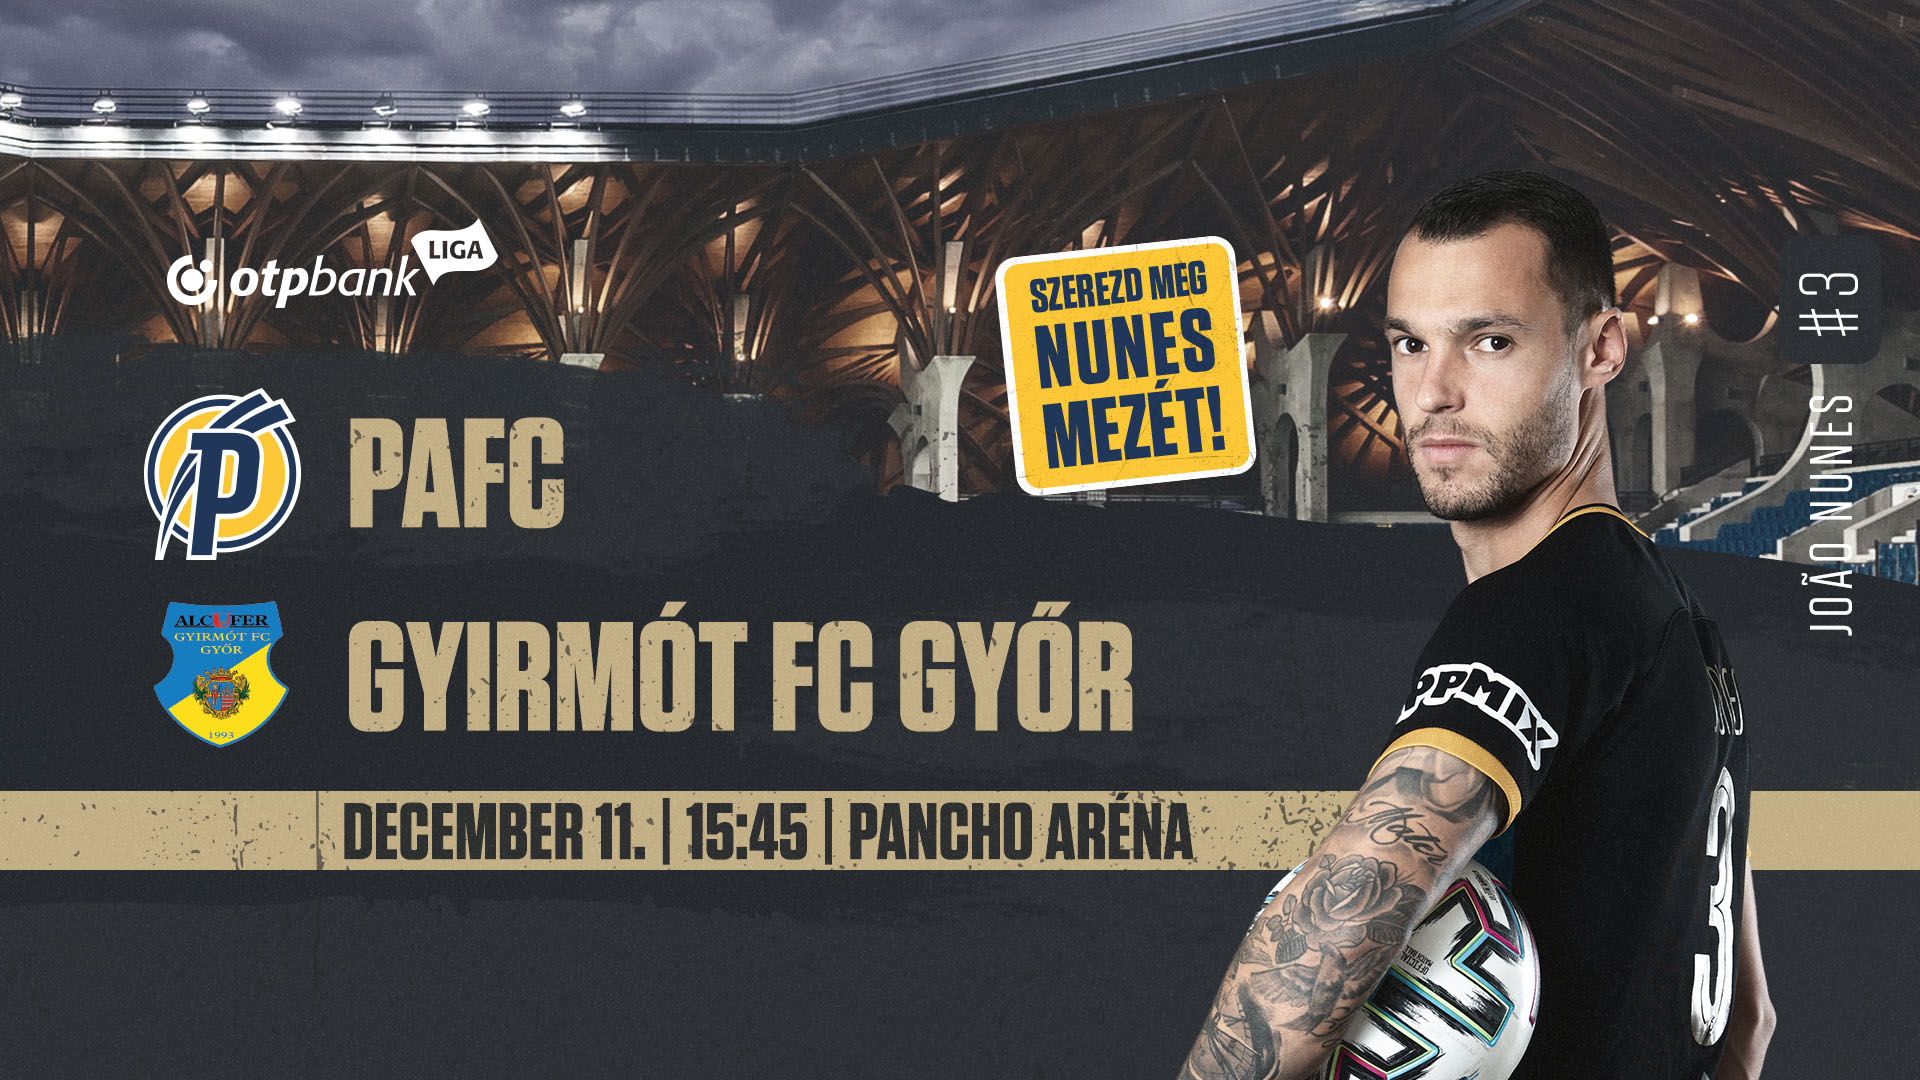 Meccsinfó: PAFC - Gyirmót FC Győr